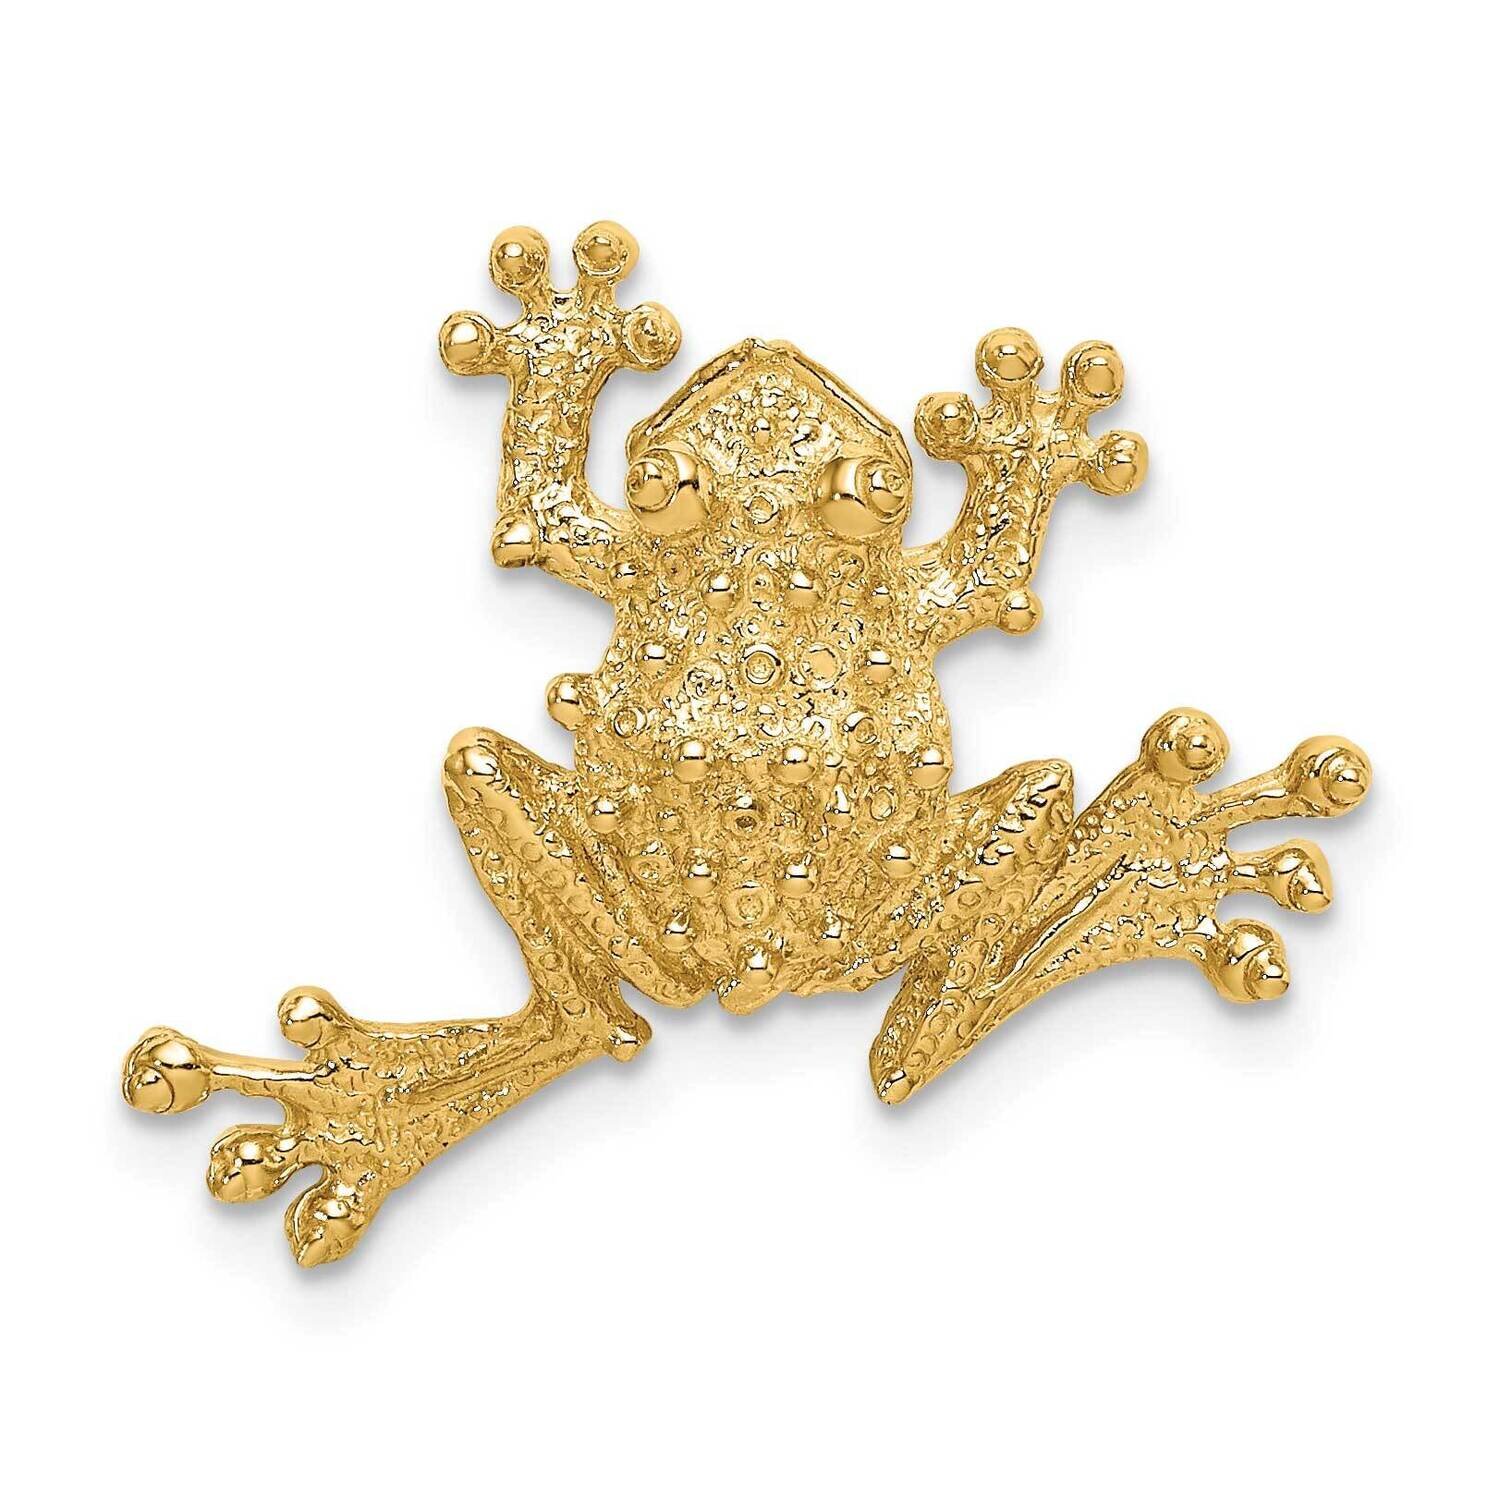 Open-Backed Frog Slide 14k Gold Solid Polished D1410